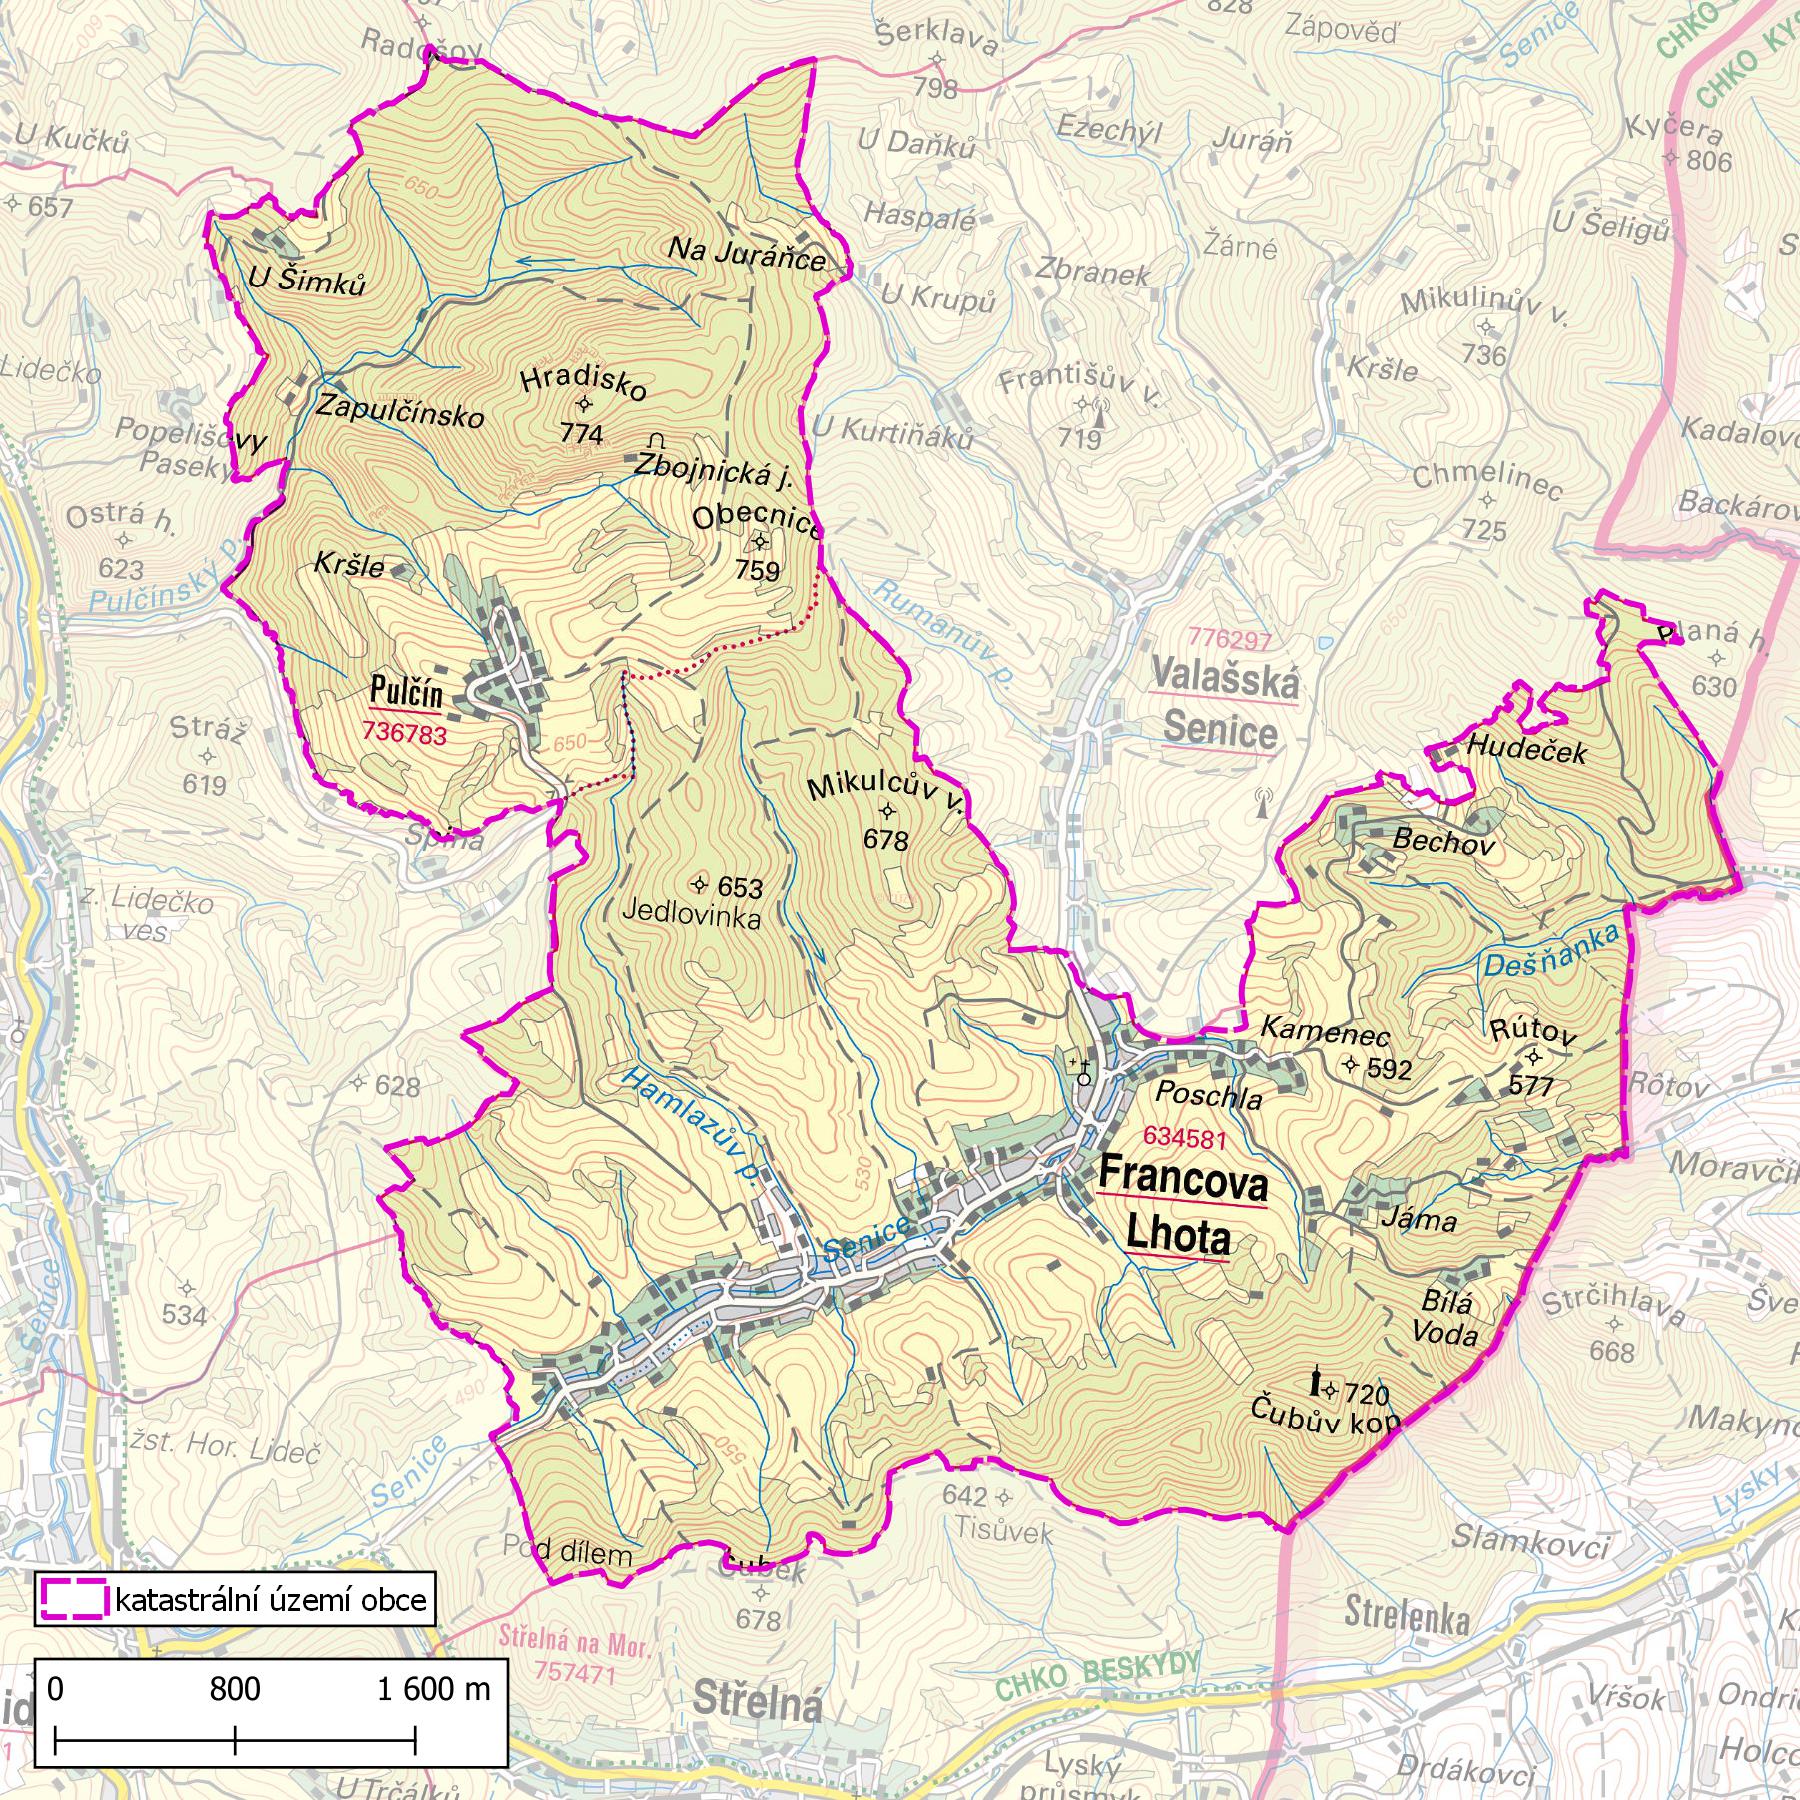 Mapa katastrálního území obce